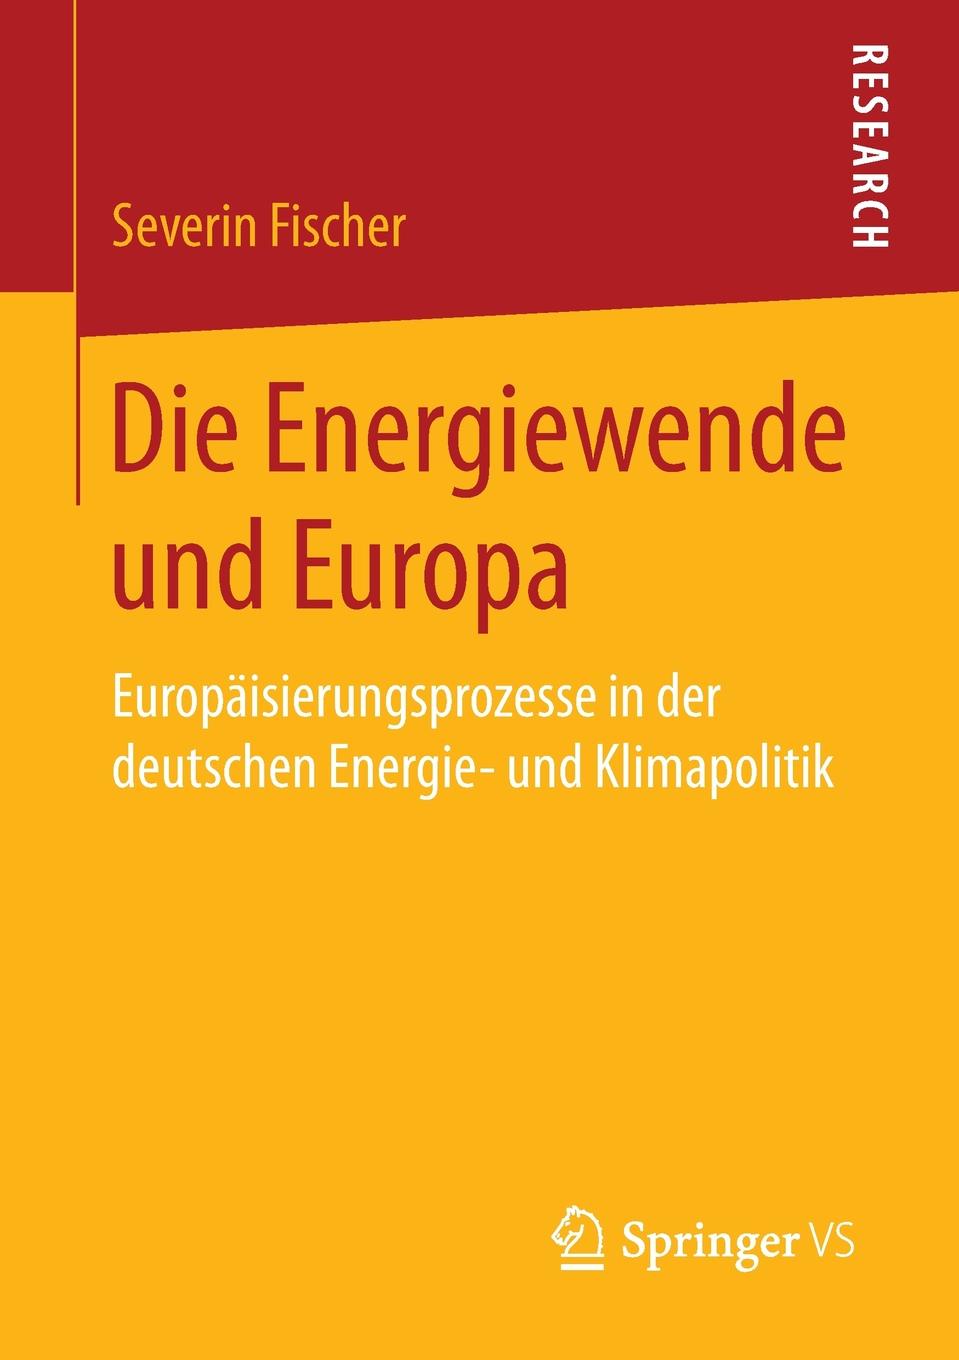 Die Energiewende und Europa. Europaisierungsprozesse in der deutschen Energie- und Klimapolitik